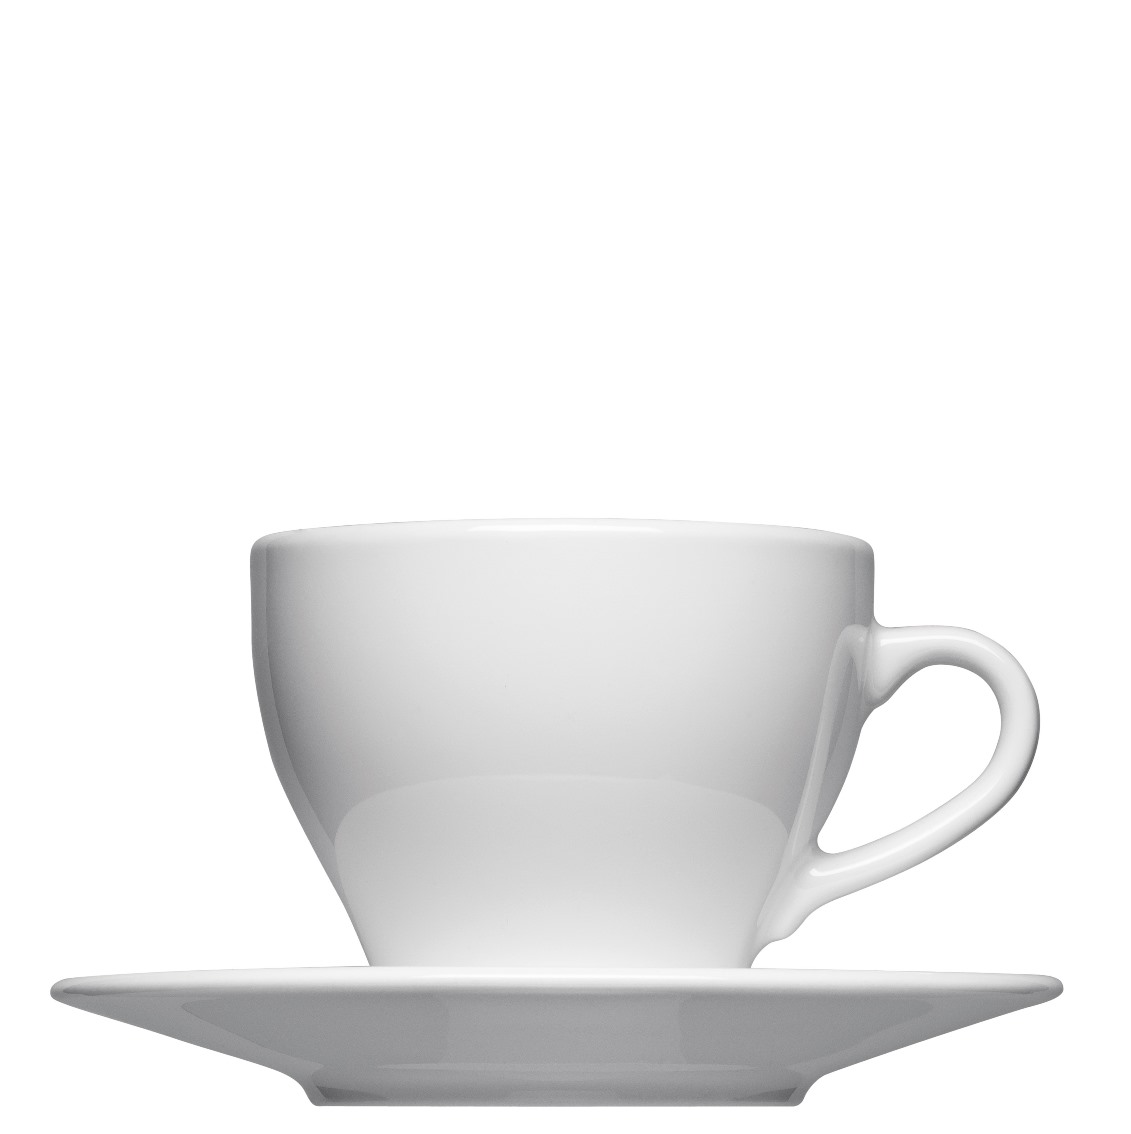 Cappuccinotasse Form 563 zum bedrucken mit einem Logo oder einer Grafik als Werbegeschenk, Werbeartikel oder Werbemittel